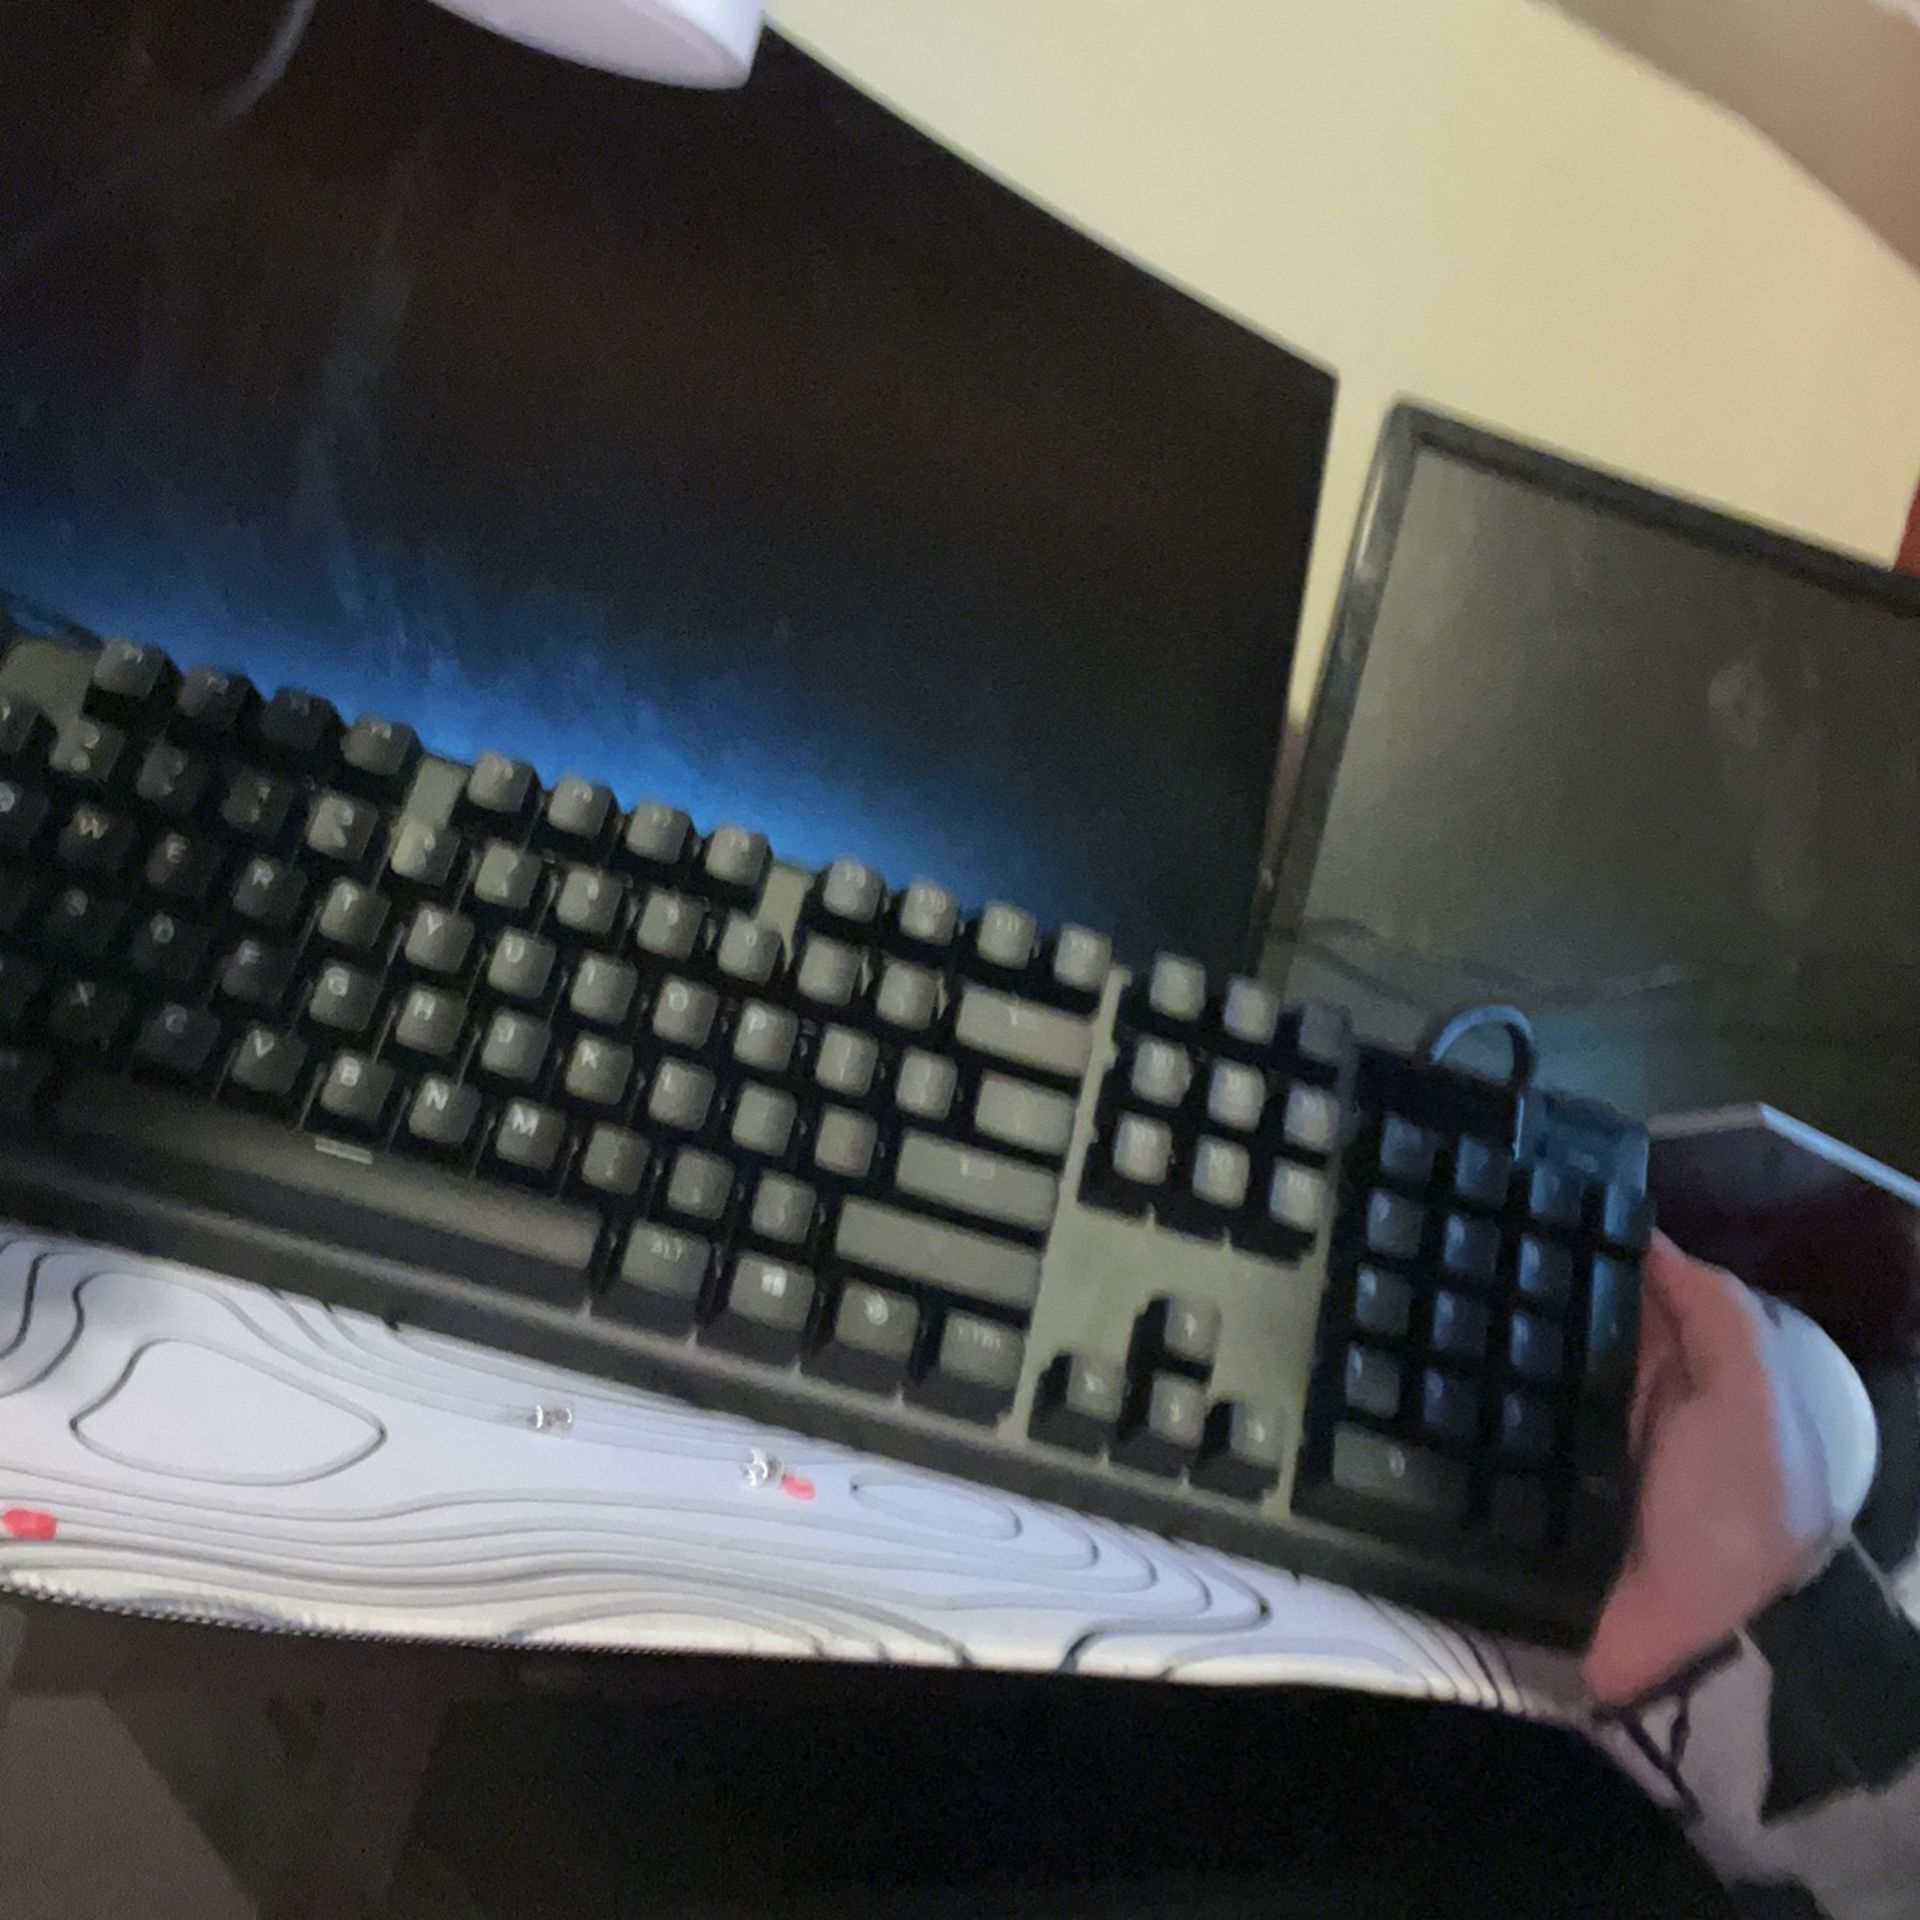 Apex Pro 100% Gaming Keyboard 